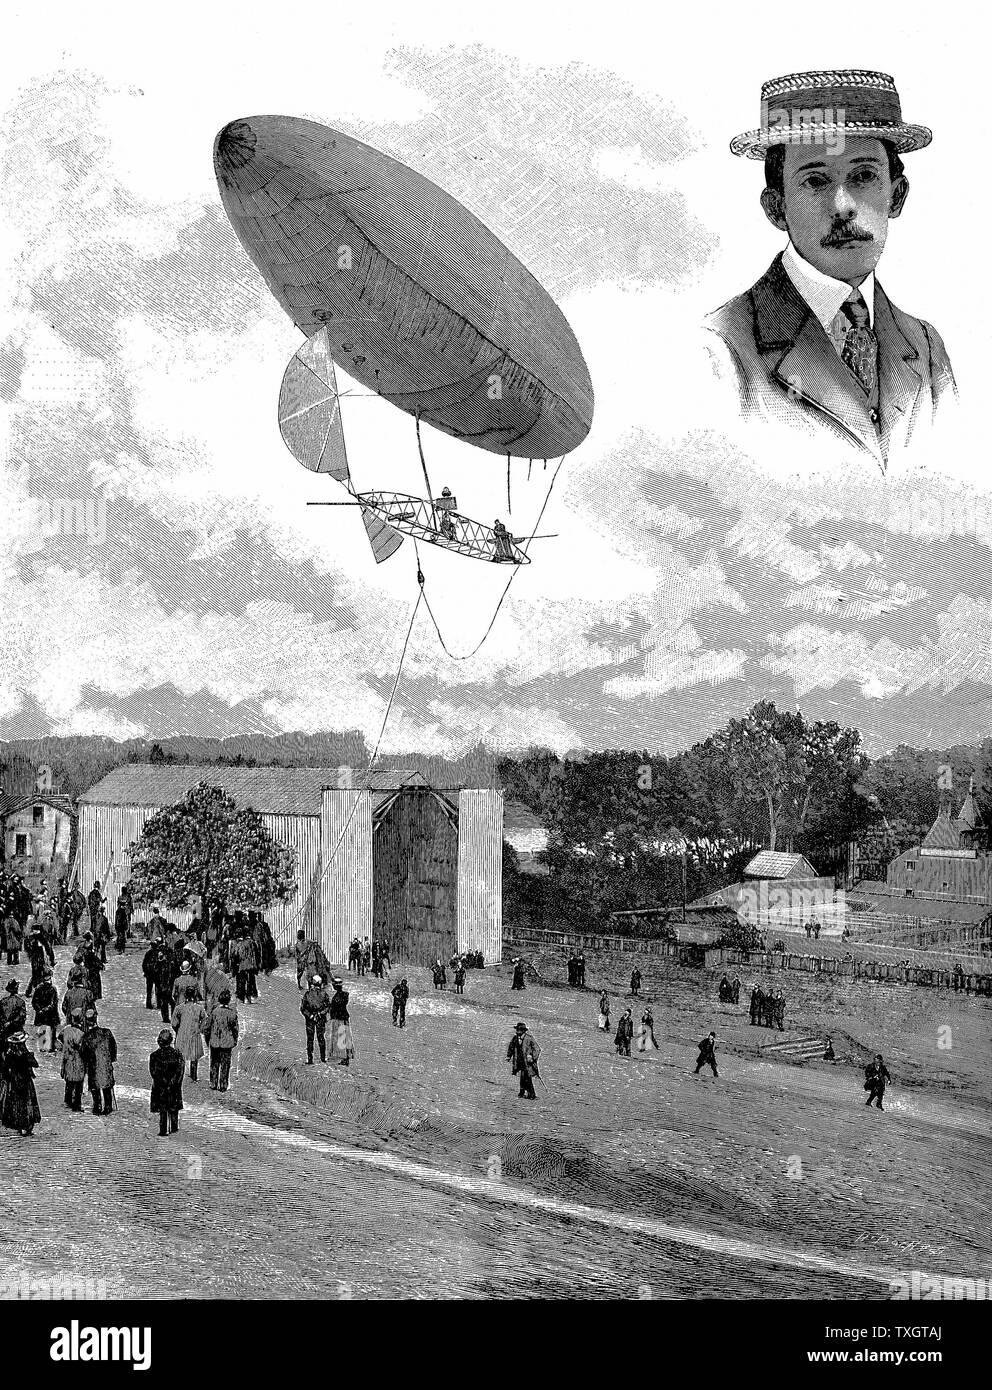 Alberto Santos-Dumont (1873-1932) brasiliano pioniere dell'aviazione. Qui nel suo dirigibile (dirigibile) n. 6 scendendo al Aero Park, Parigi, dopo aver vinto il premio Deutsch, 19 Ottobre 1901 16 novembre 1901 Inset: ritratto. Da "cooperazione scientifica americana" Foto Stock